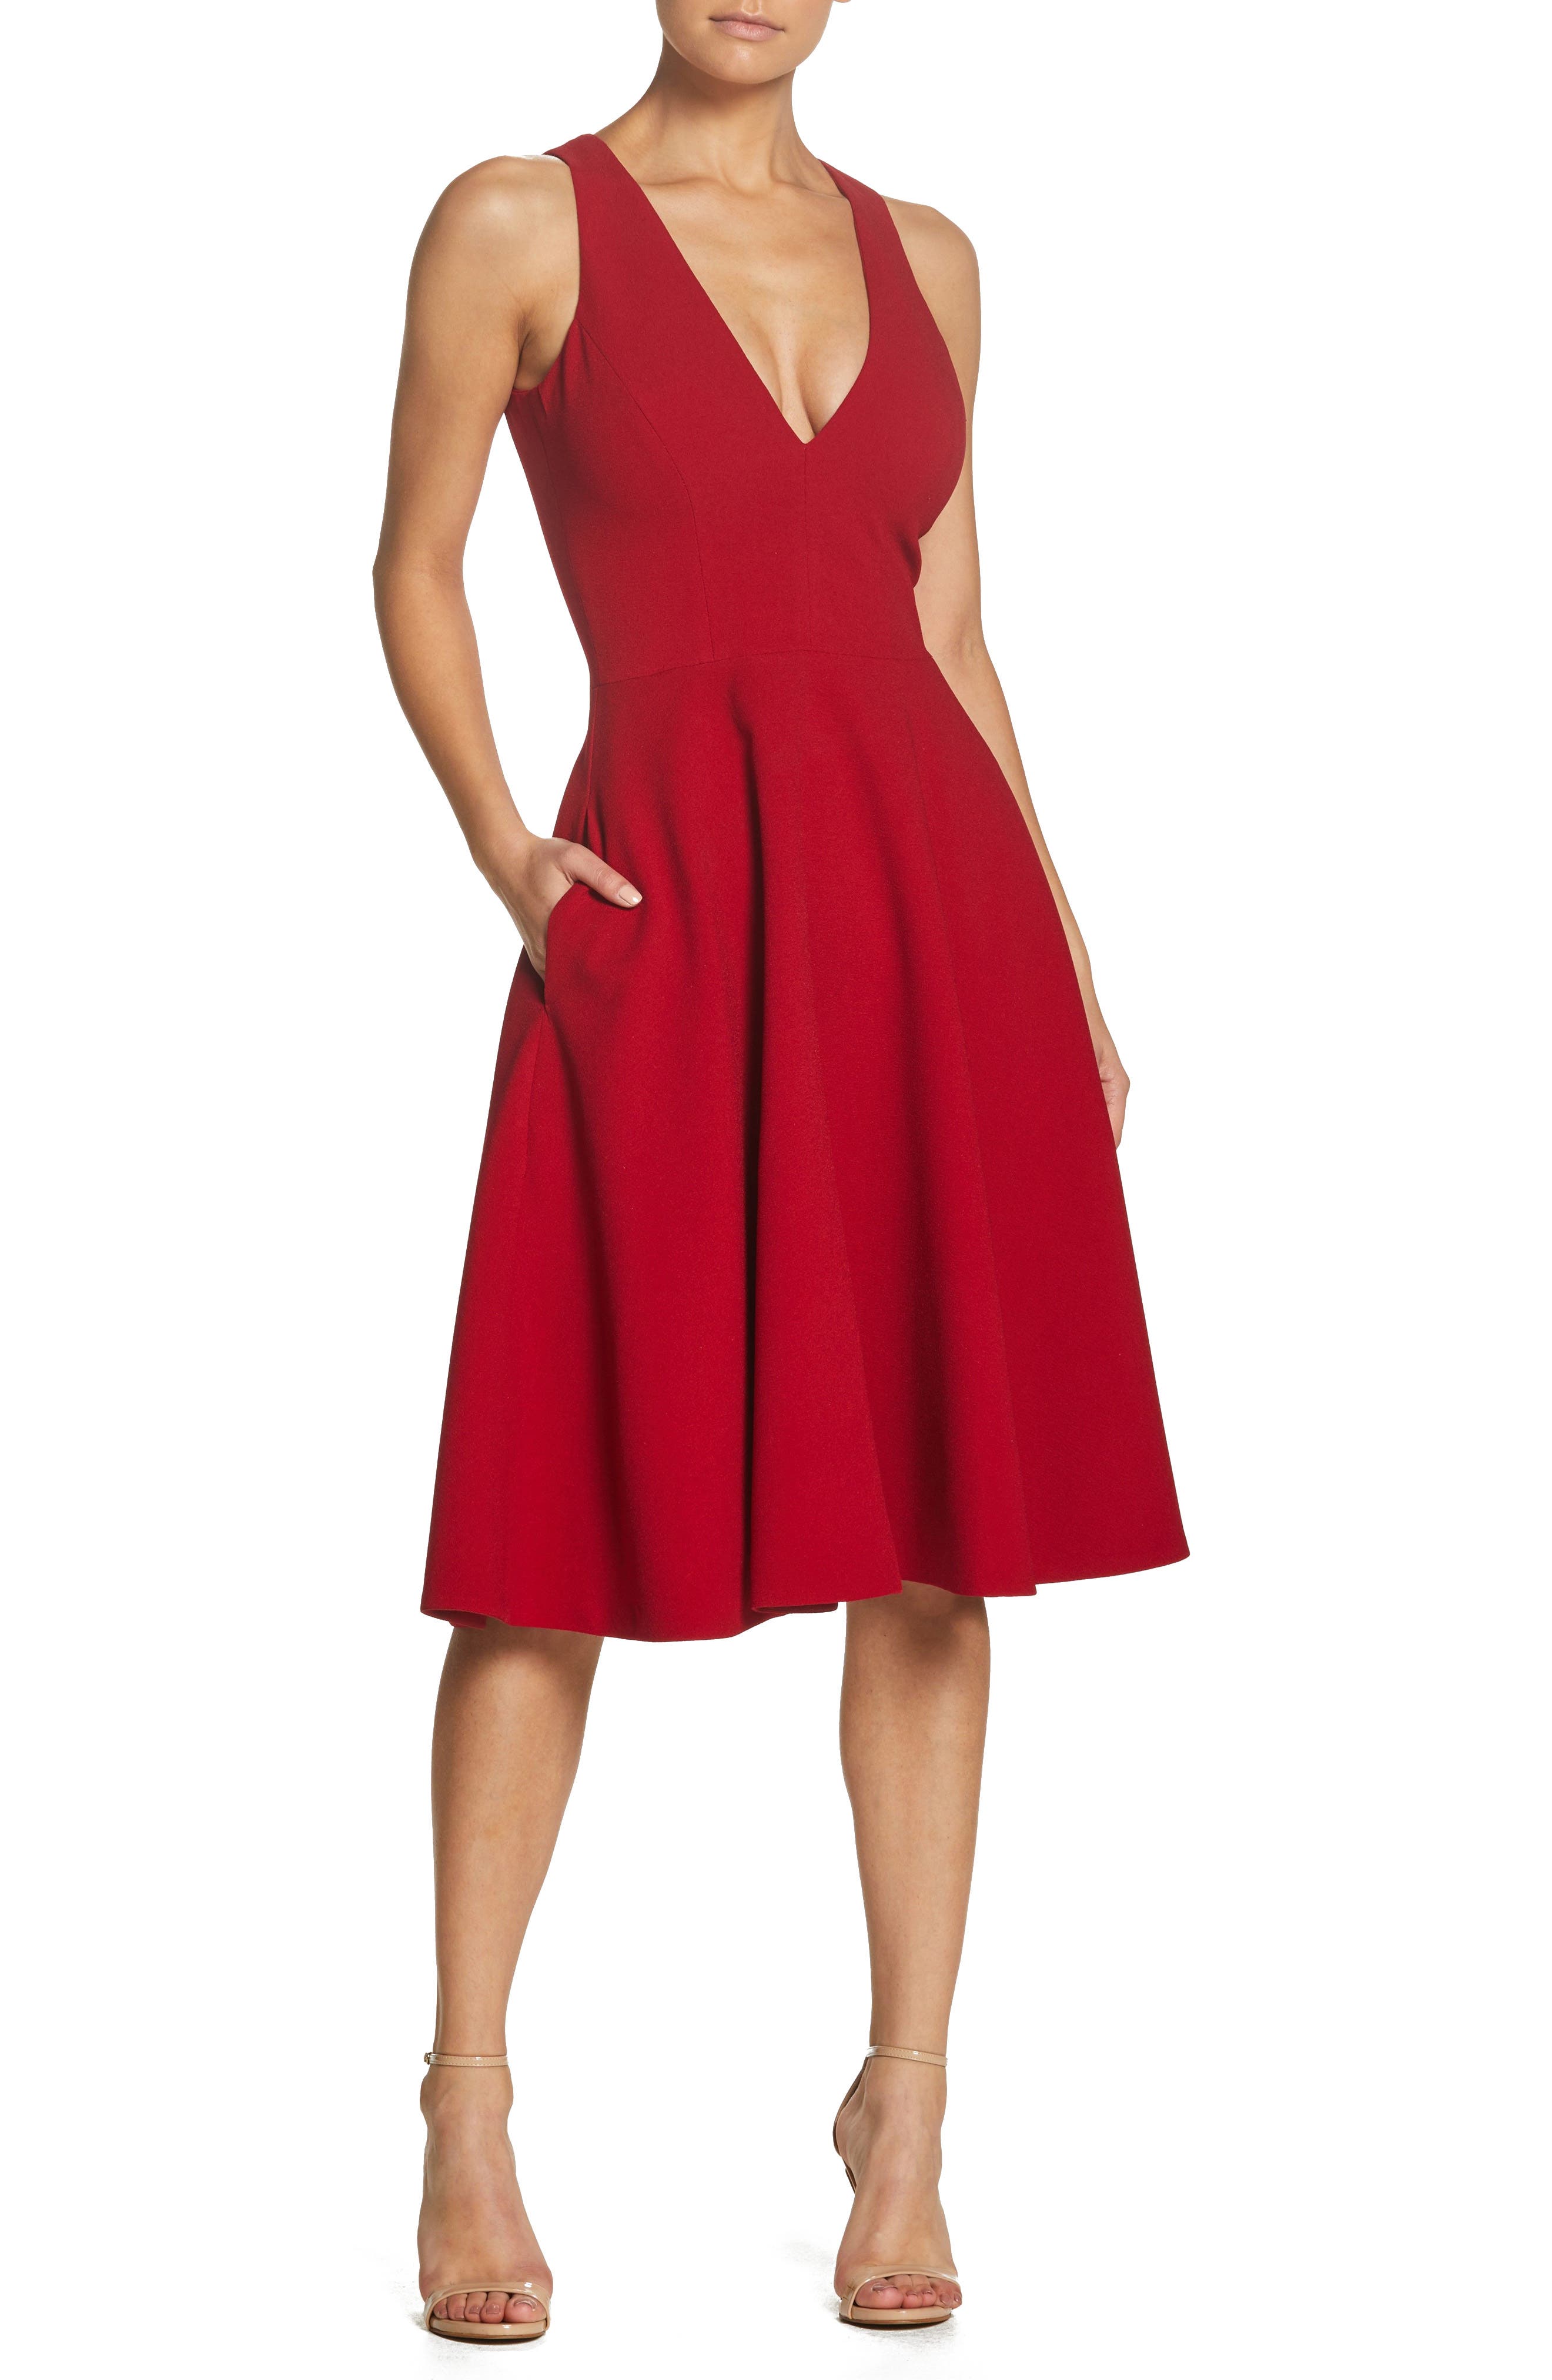 Women's Red Dresses | Nordstrom